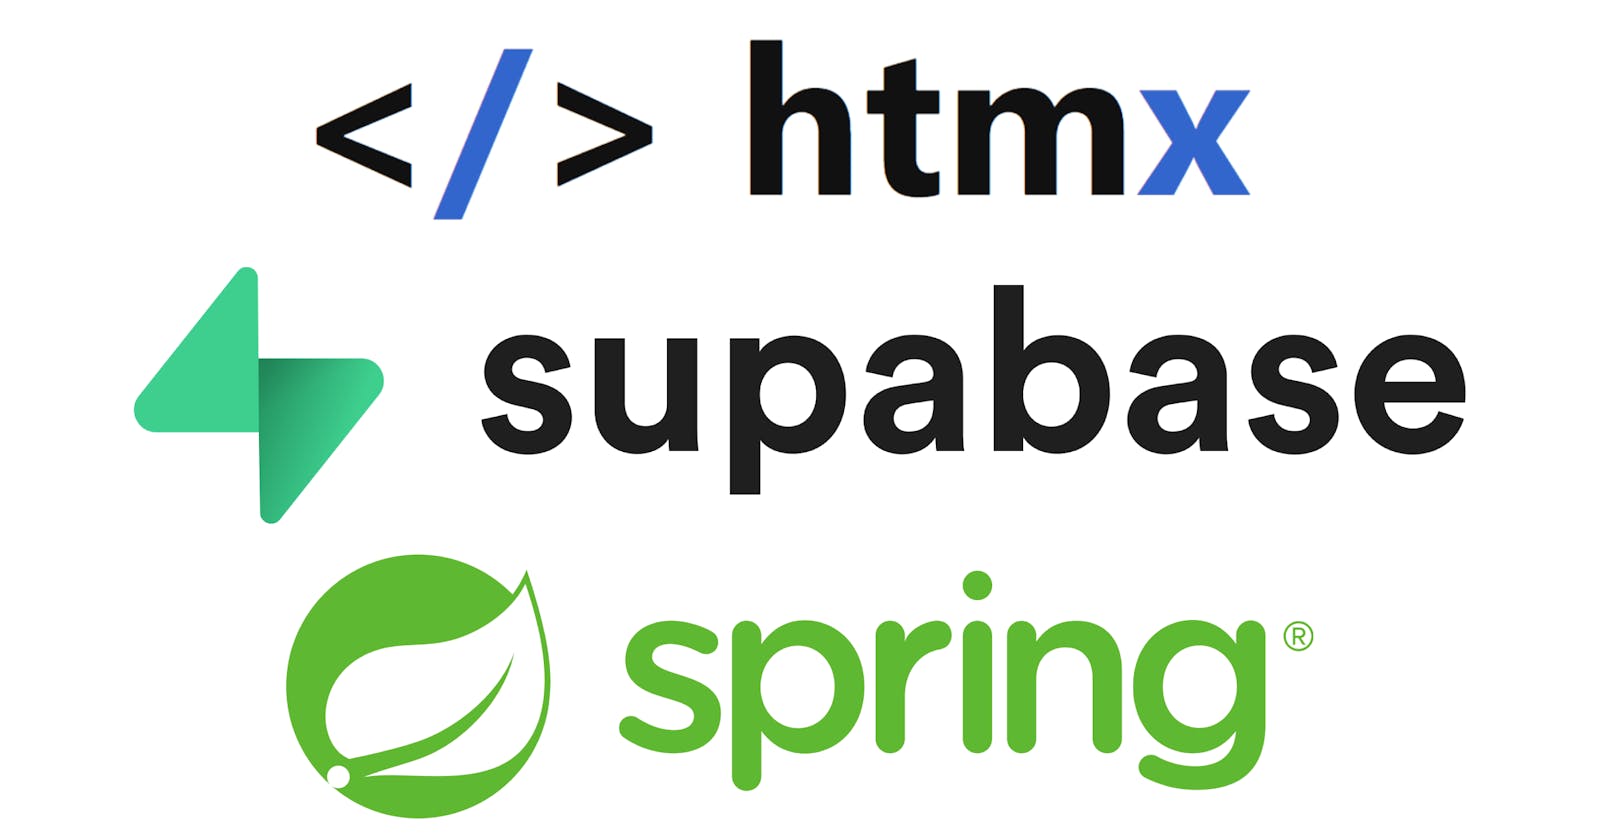 Introducing the htmx-supabase-spring-boot-starter v0.3